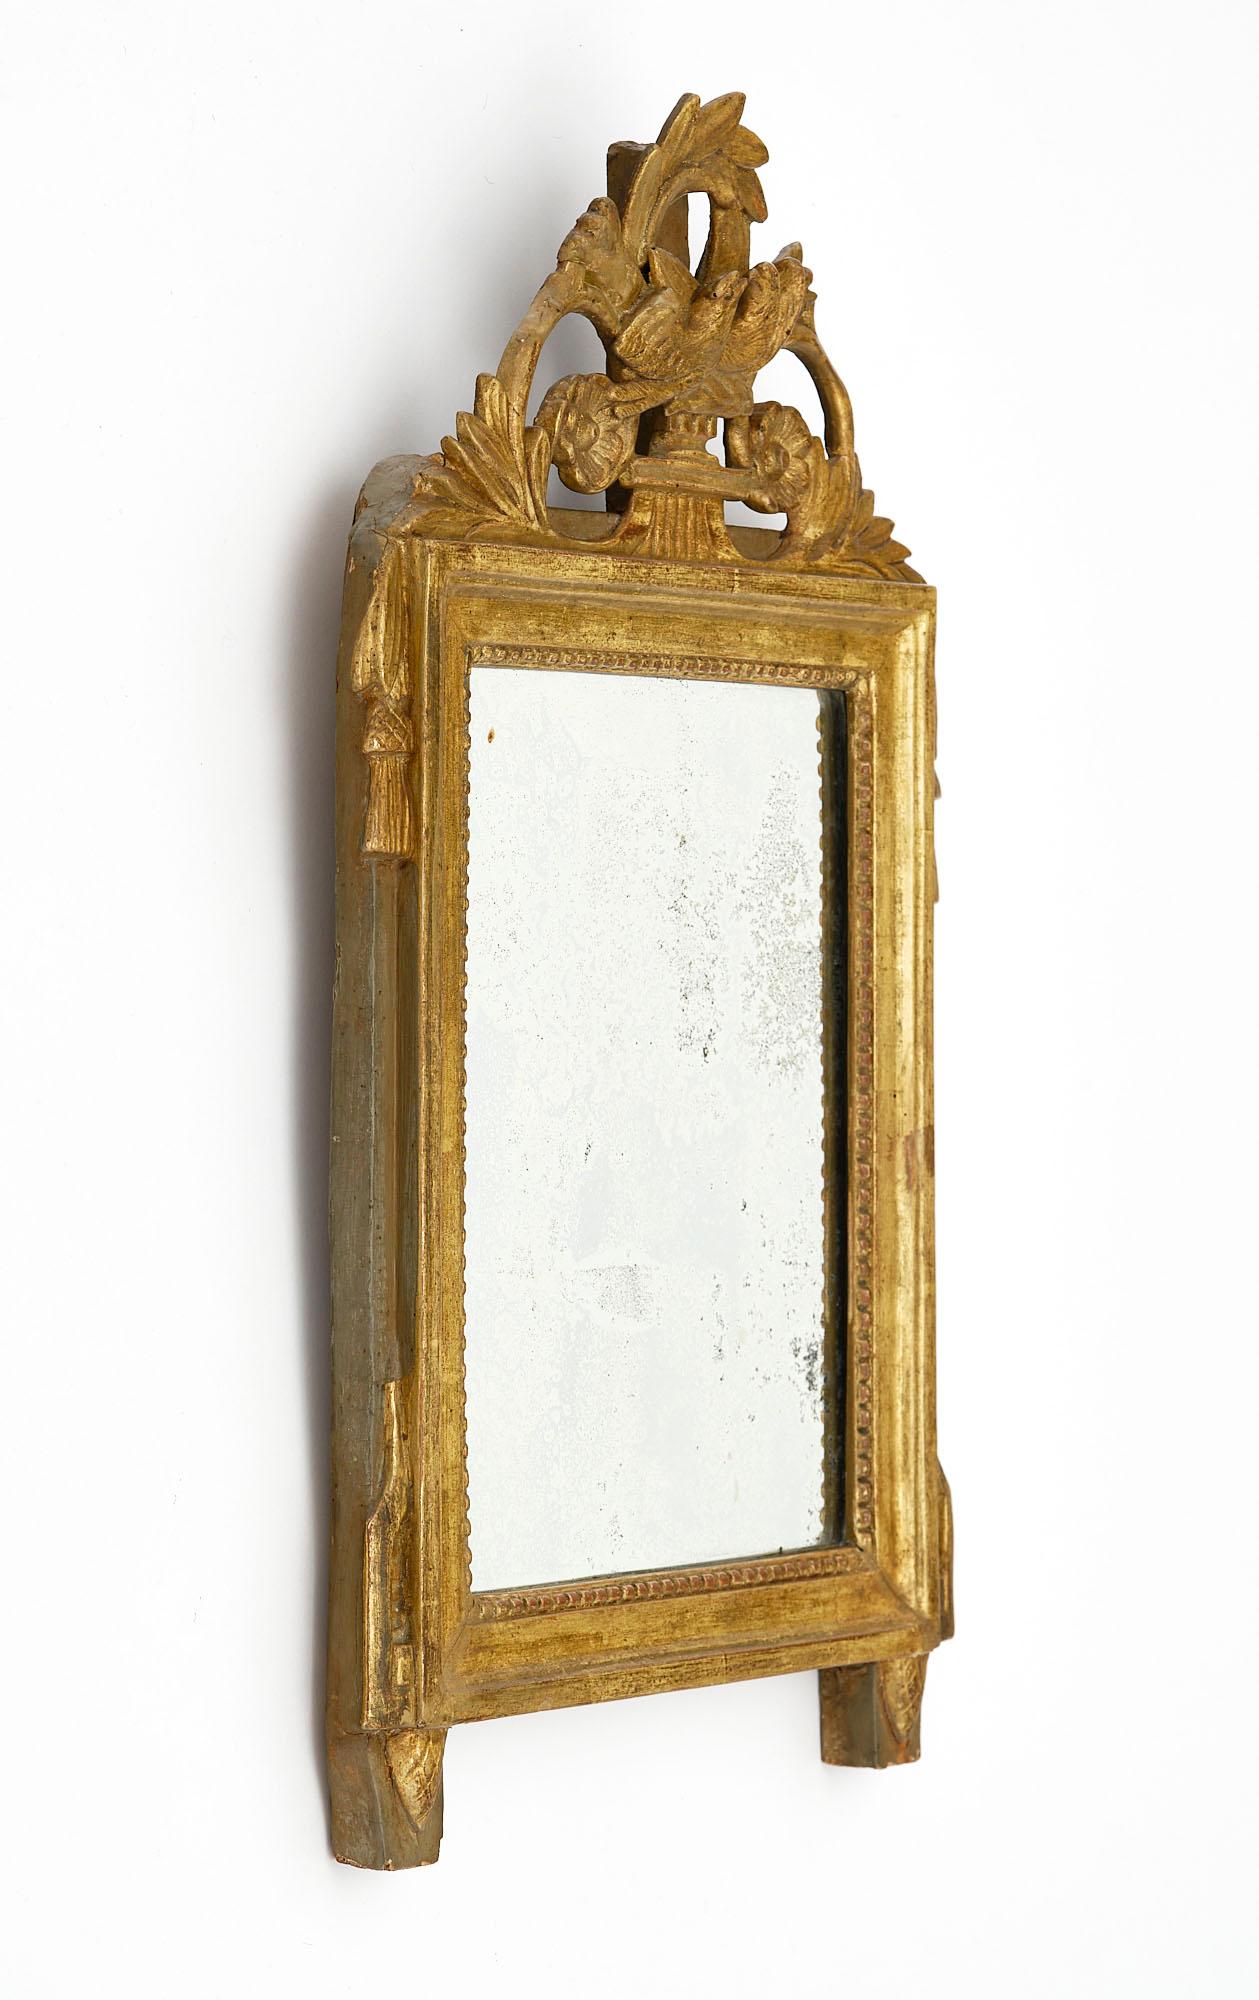 Miroir de France d'époque Louis XVI. Cette pièce est en bois stuqué et sculpté à la main, avec un fronton représentant des oiseaux, des motifs floraux et une couronne de laurier. Les feuilles d'or 24 carats sont d'origine, de même que le miroir au